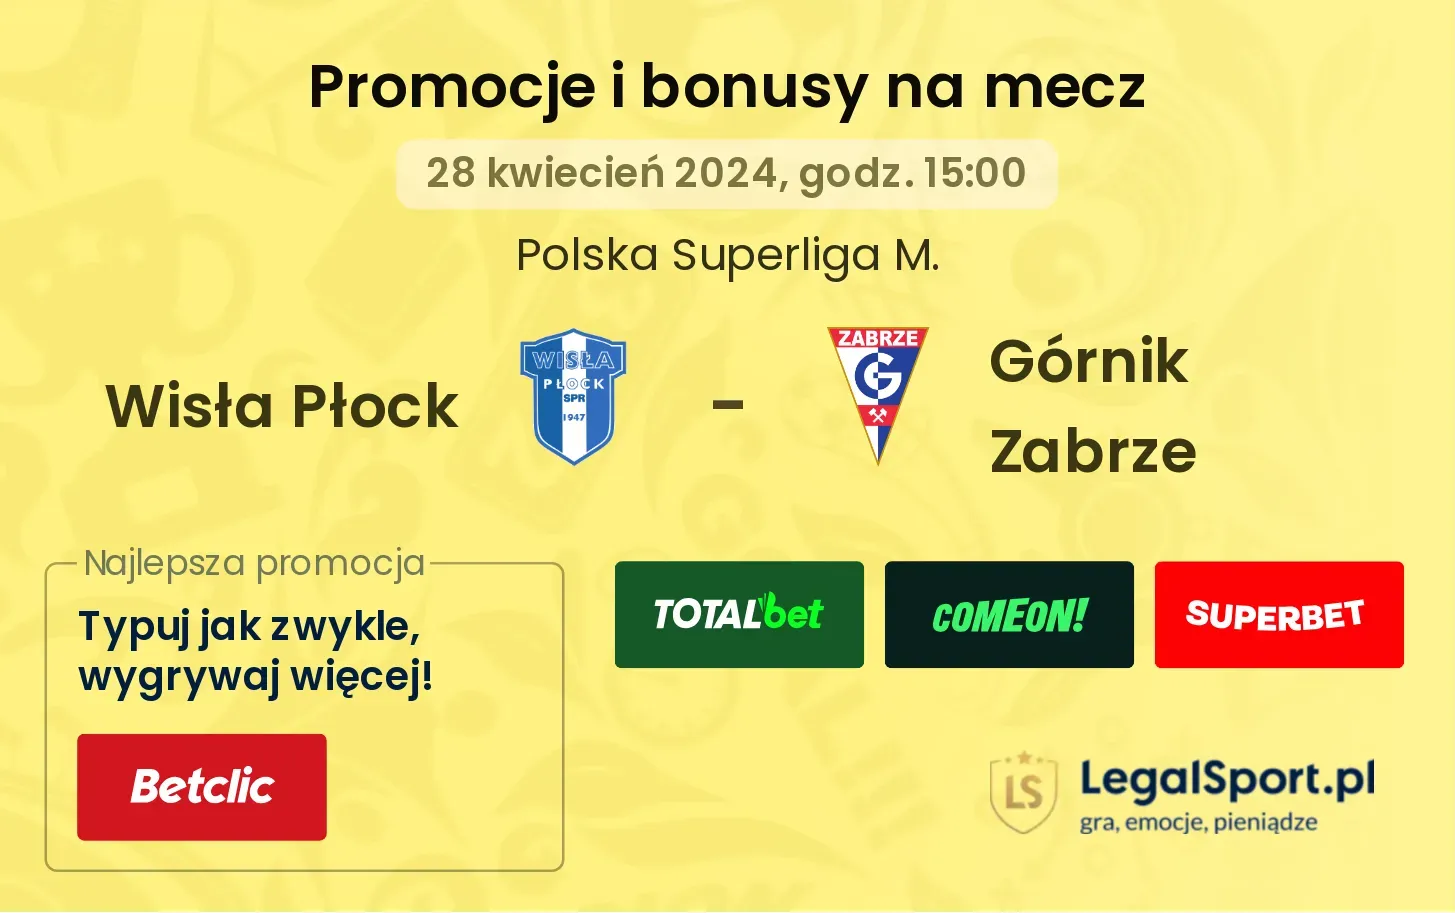 Wisła Płock - Górnik Zabrze promocje i bonusy (28.04, 15:00)